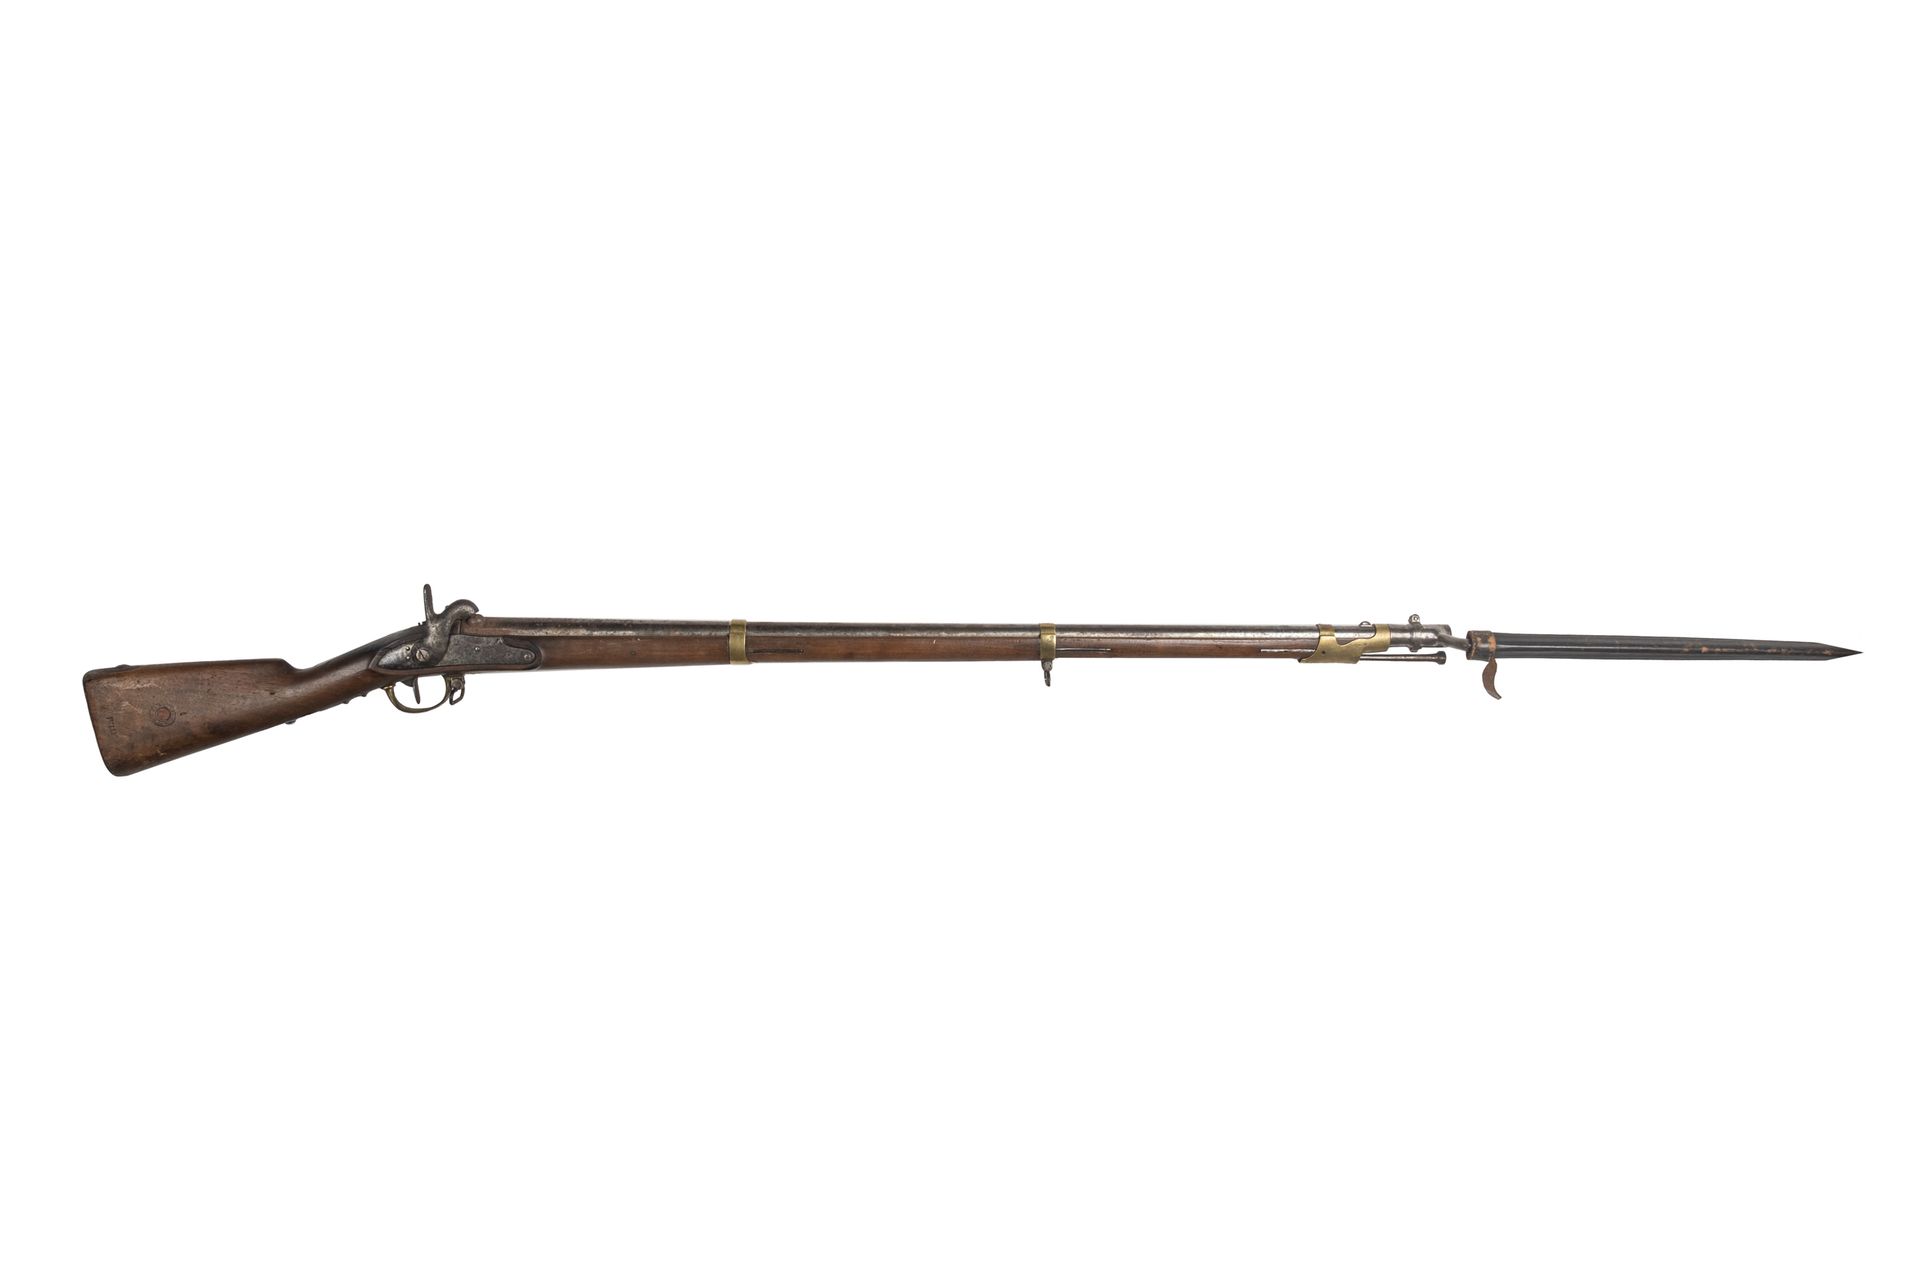 Null 打击式步枪1822型T Bis，归属于海军。

圆形枪管，带冲压的雷电。尾座上印有 "Mle 1822 T BIS"。锁 "Mre Rle de St&hellip;